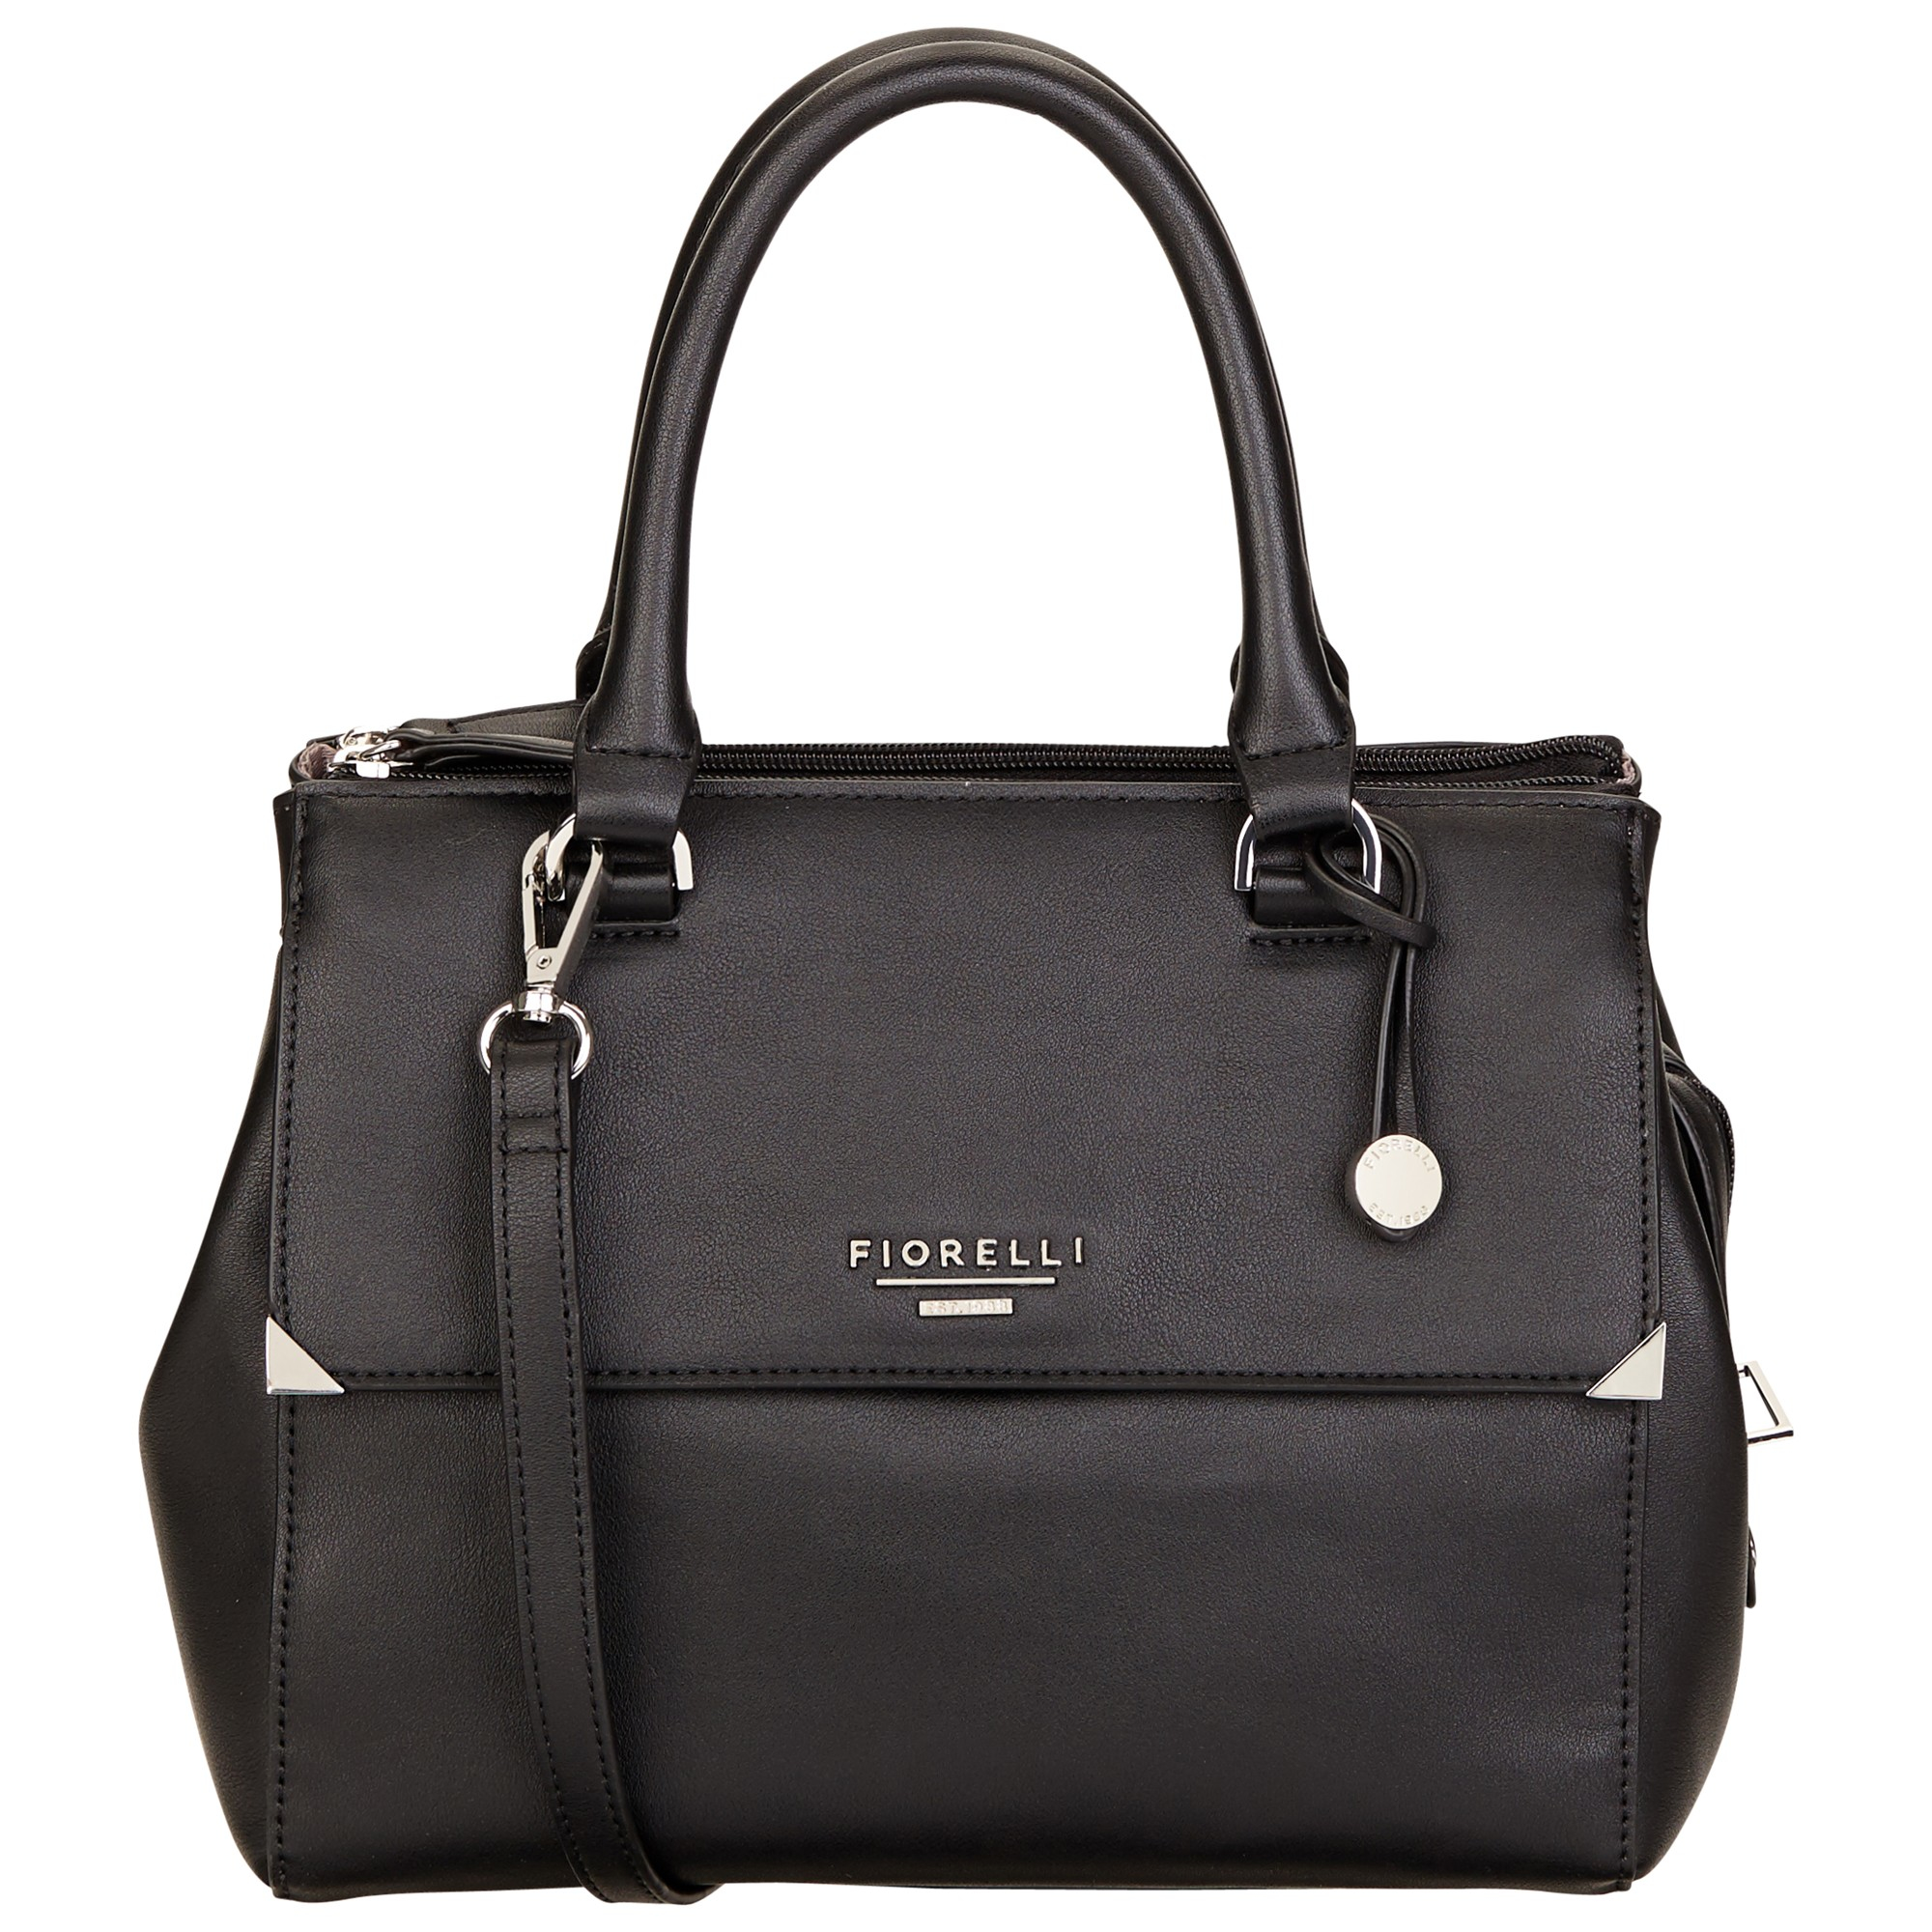 Fiorelli Mia Grab Bag in Black - Lyst